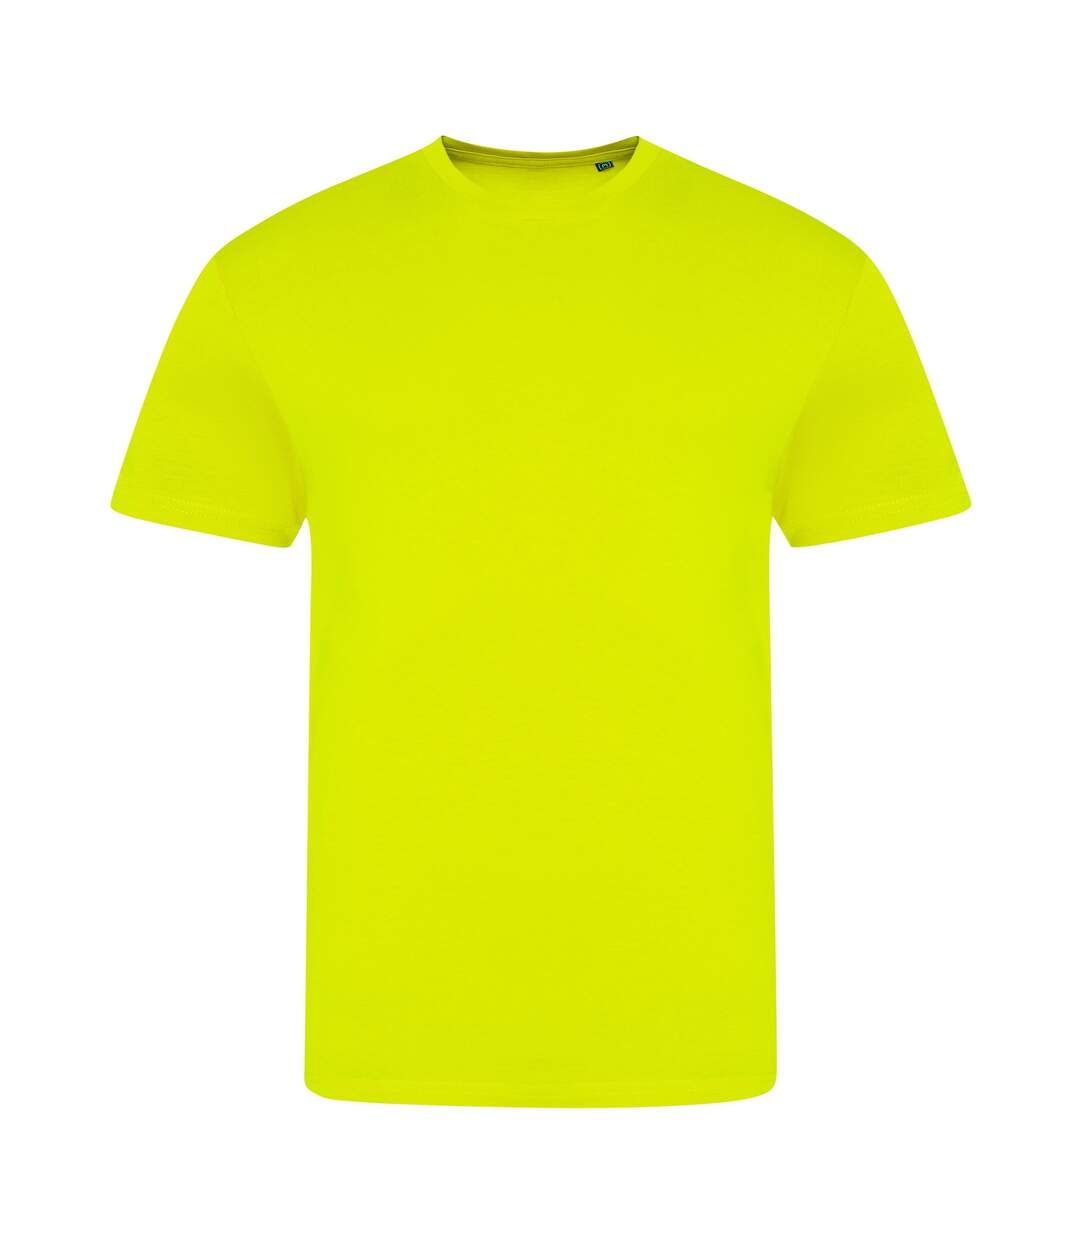 Awdis T-shirt tri-blend unisexe électrique pour adultes (Jaune électrique) - UTRW7842